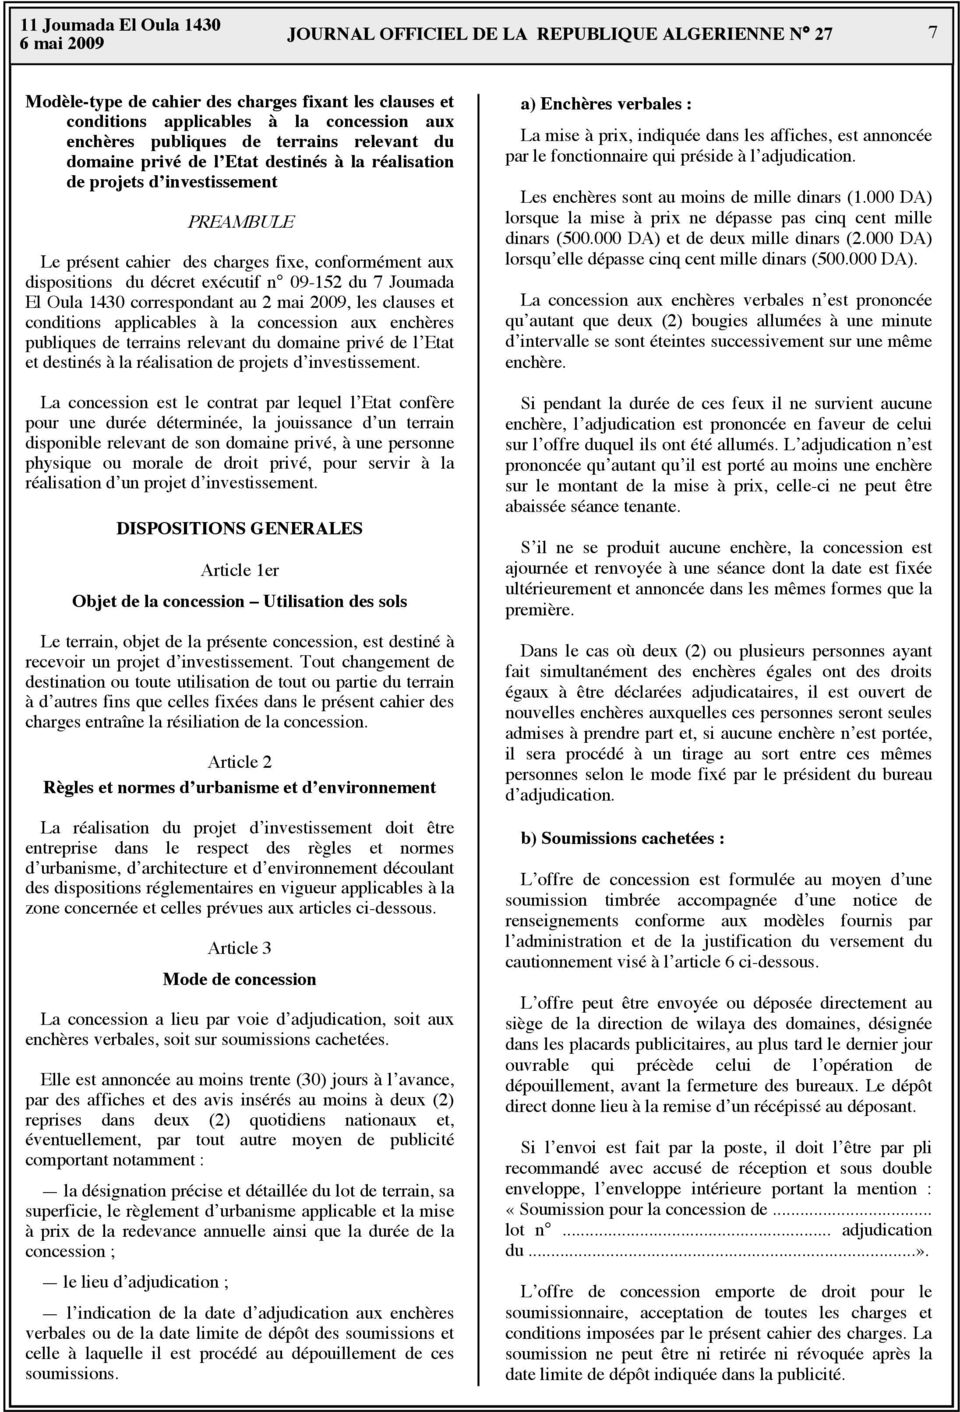 09-152 du 7 Joumada El Oula 1430 correspondant au 2 mai 2009, les clauses et conditions applicables à la concession aux enchères publiques de terrains relevant du domaine privé de l Etat et destinés